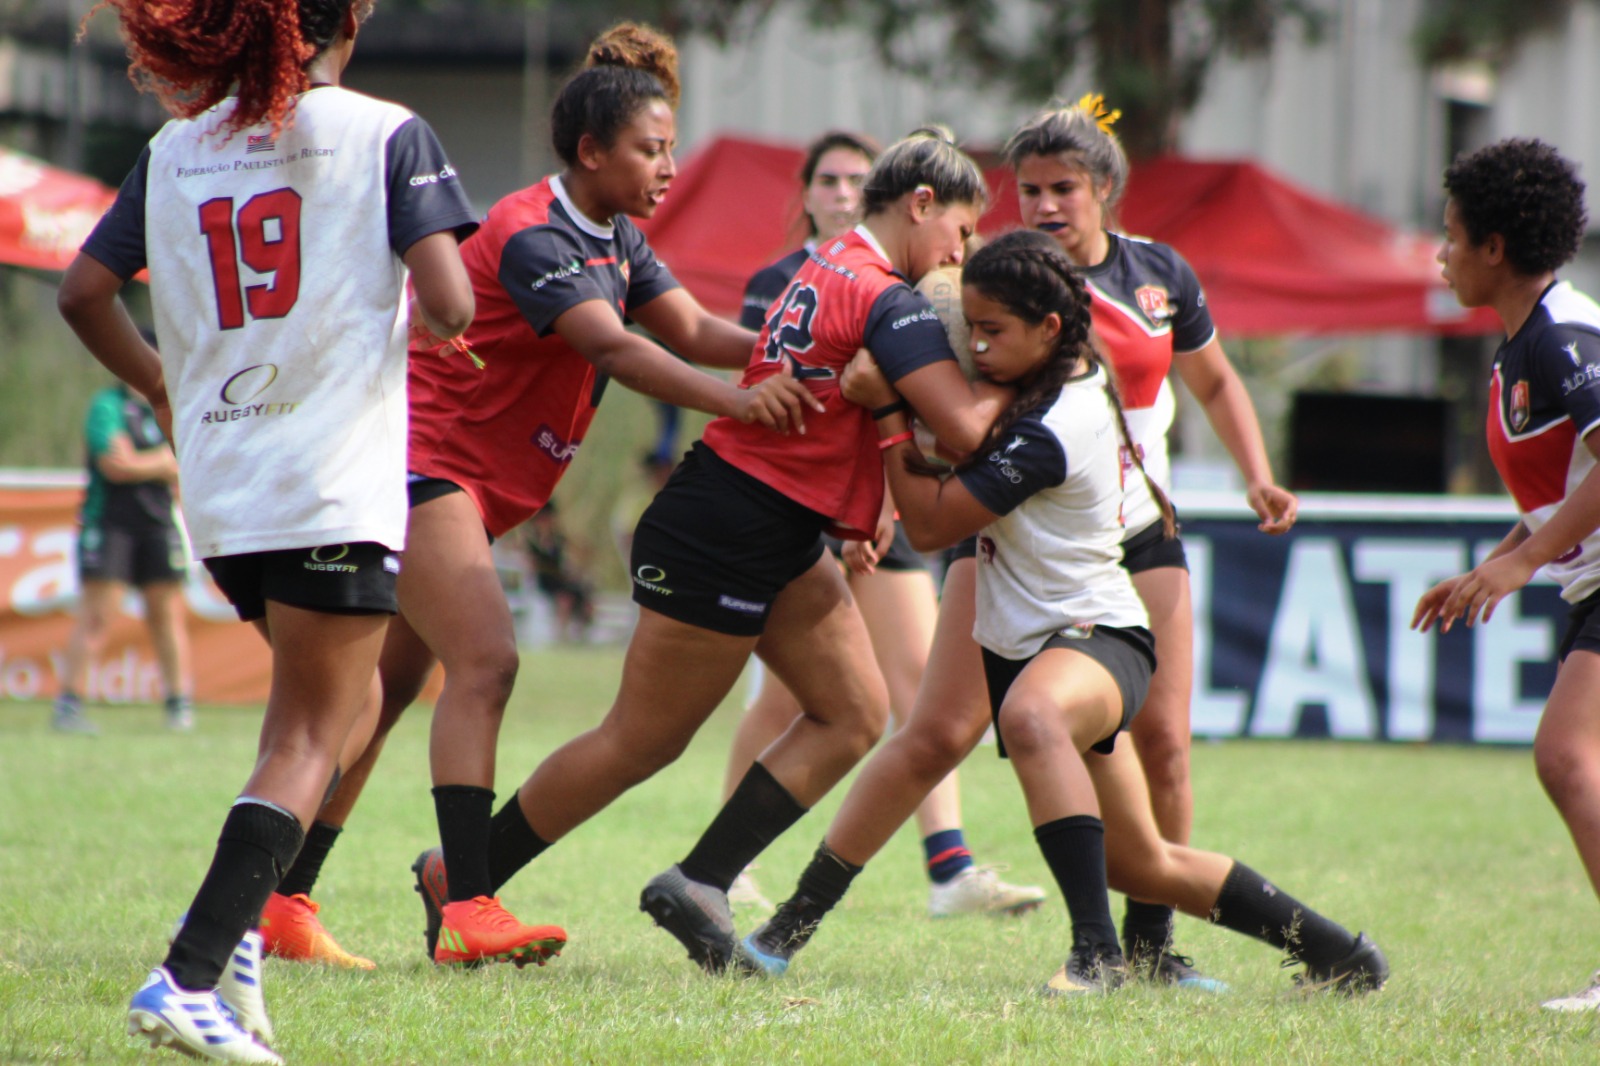 Seleções de Paraná e São Paulo decidirão os títulos últimos do Campeonato Brasileiro Juvenil de Rugby XV